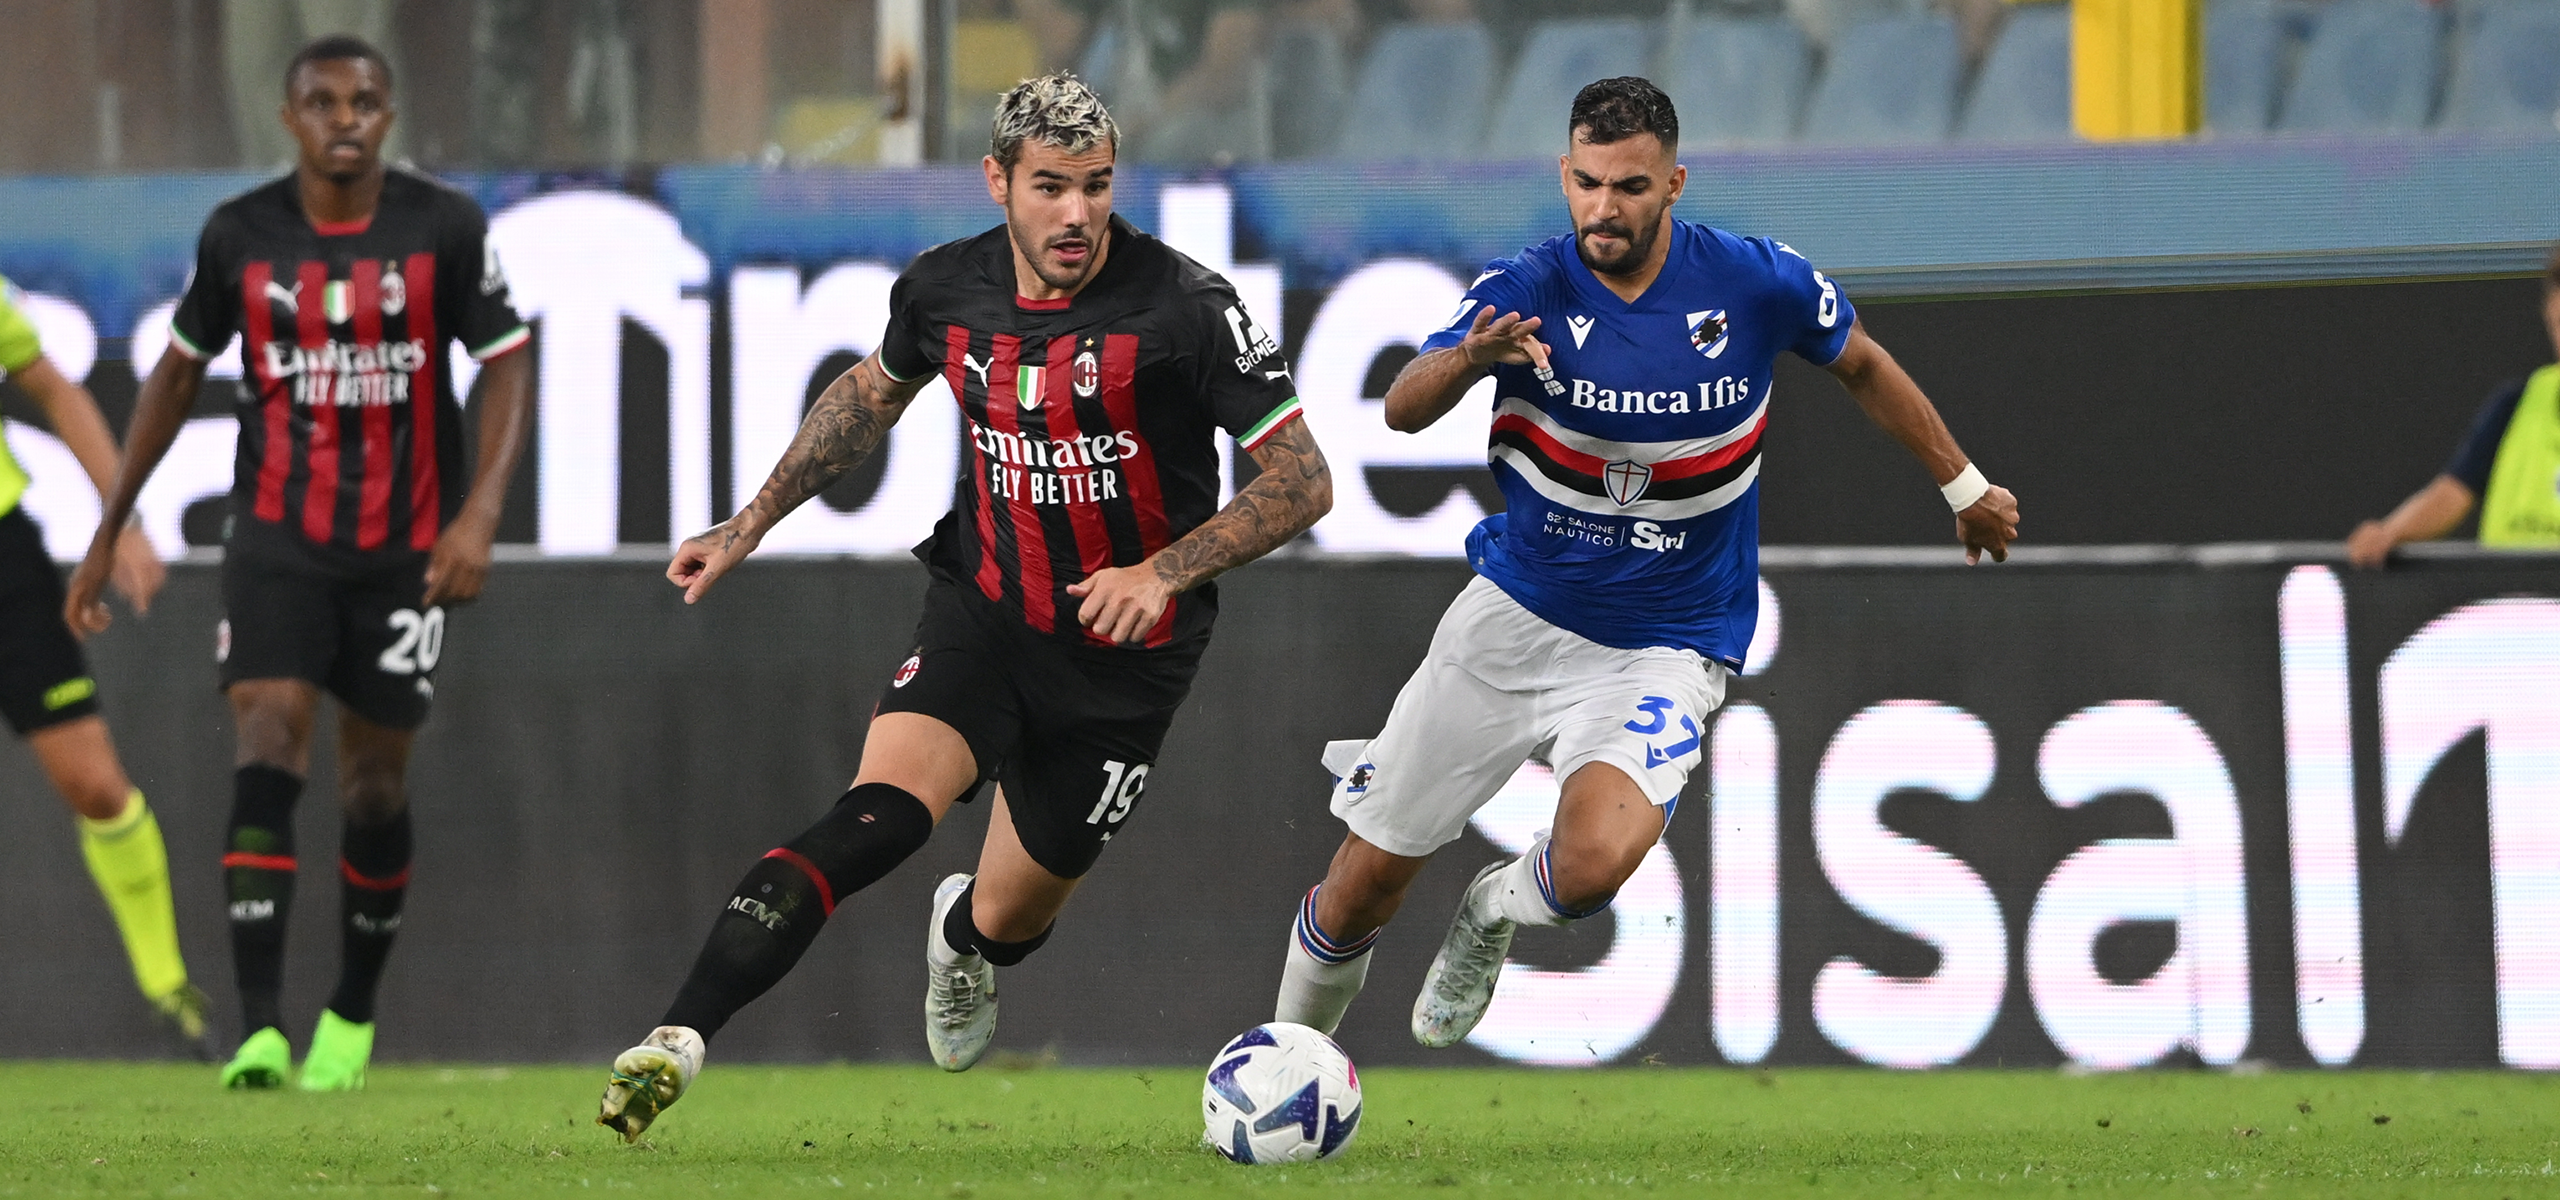 Sampdoria 1-2 AC A TIM facts and stats | Milan